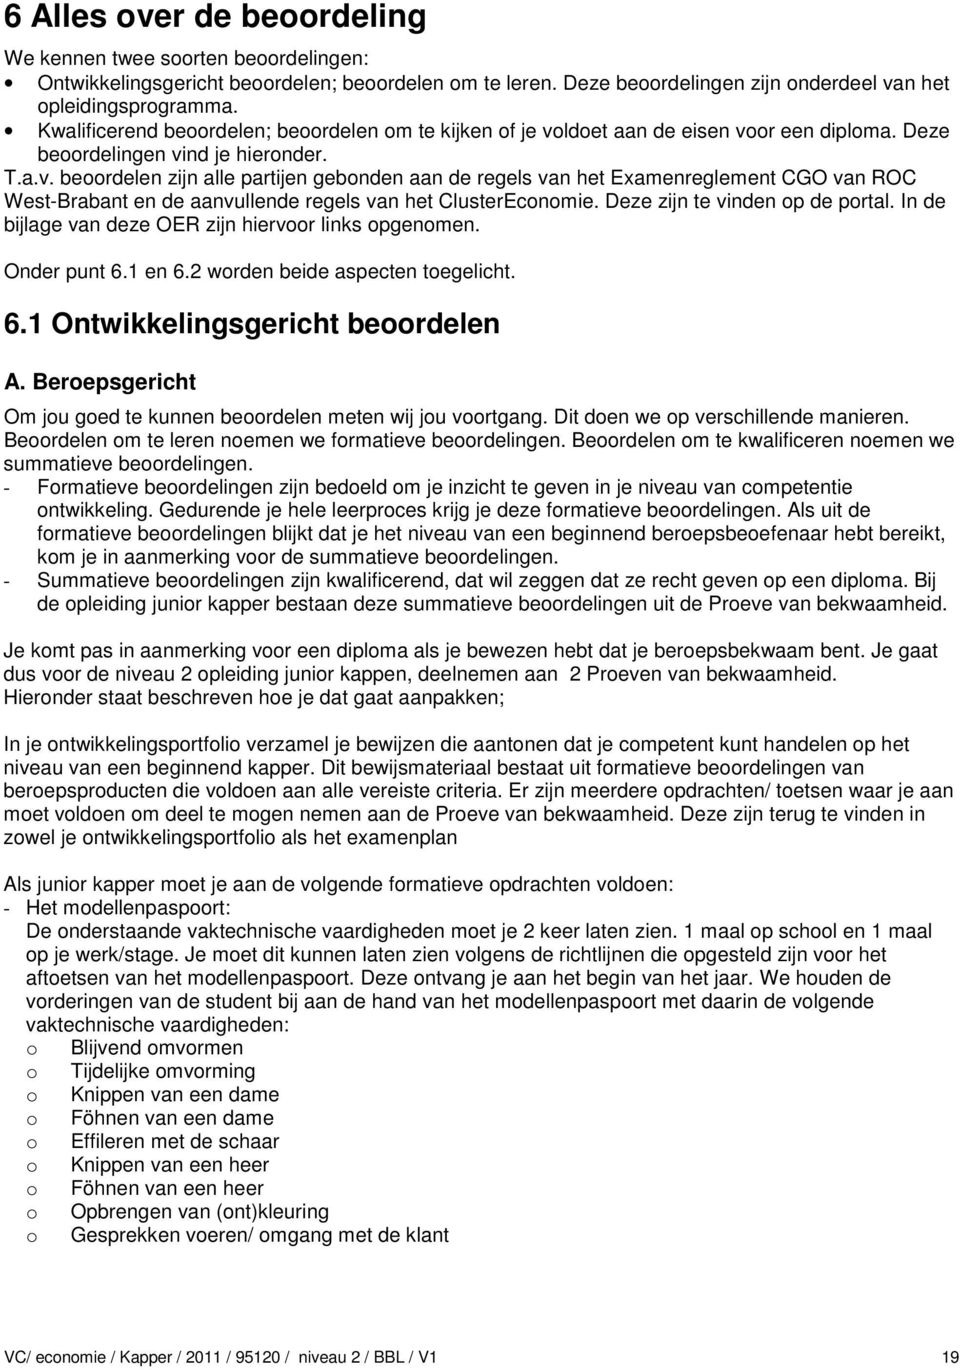 ldoet aan de eisen voor een diploma. Deze beoordelingen vind je hieronder. T.a.v. beoordelen zijn alle partijen gebonden aan de regels van het Examenreglement CGO van ROC West-Brabant en de aanvullende regels van het ClusterEconomie.